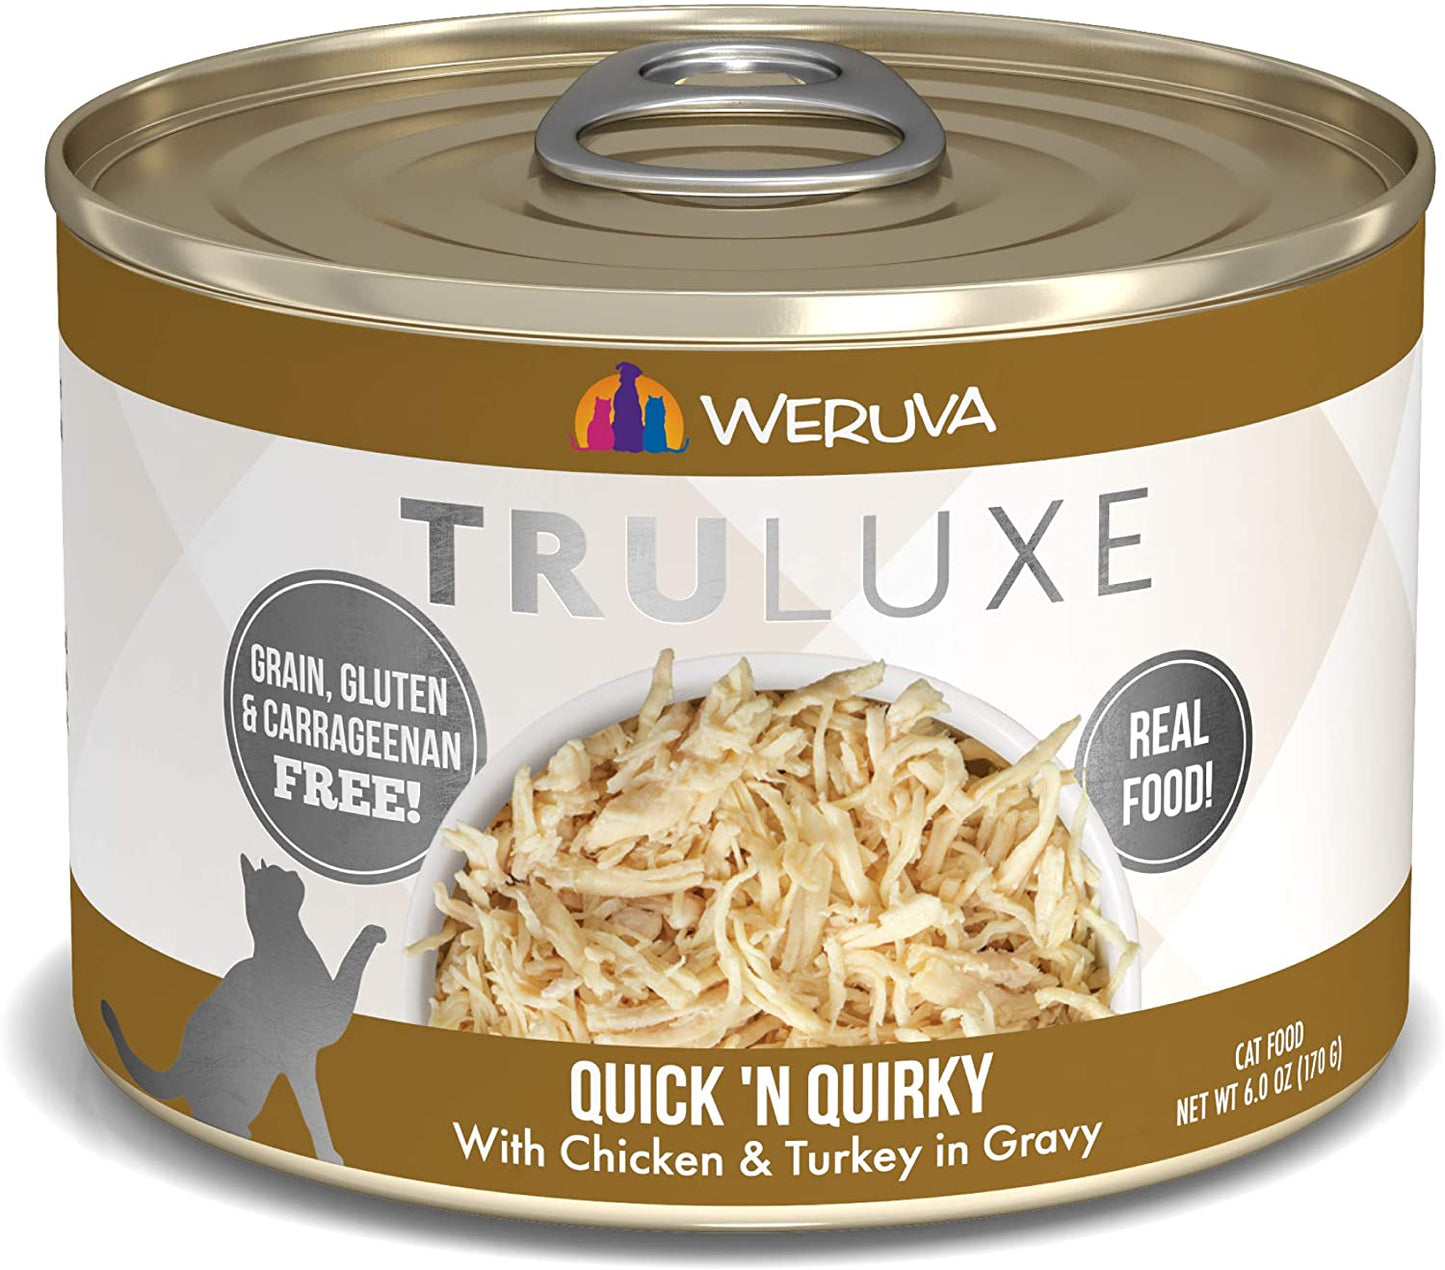 Weruva TruLuxe Quick 'N Quirky with Chicken & Turkey in Gravy